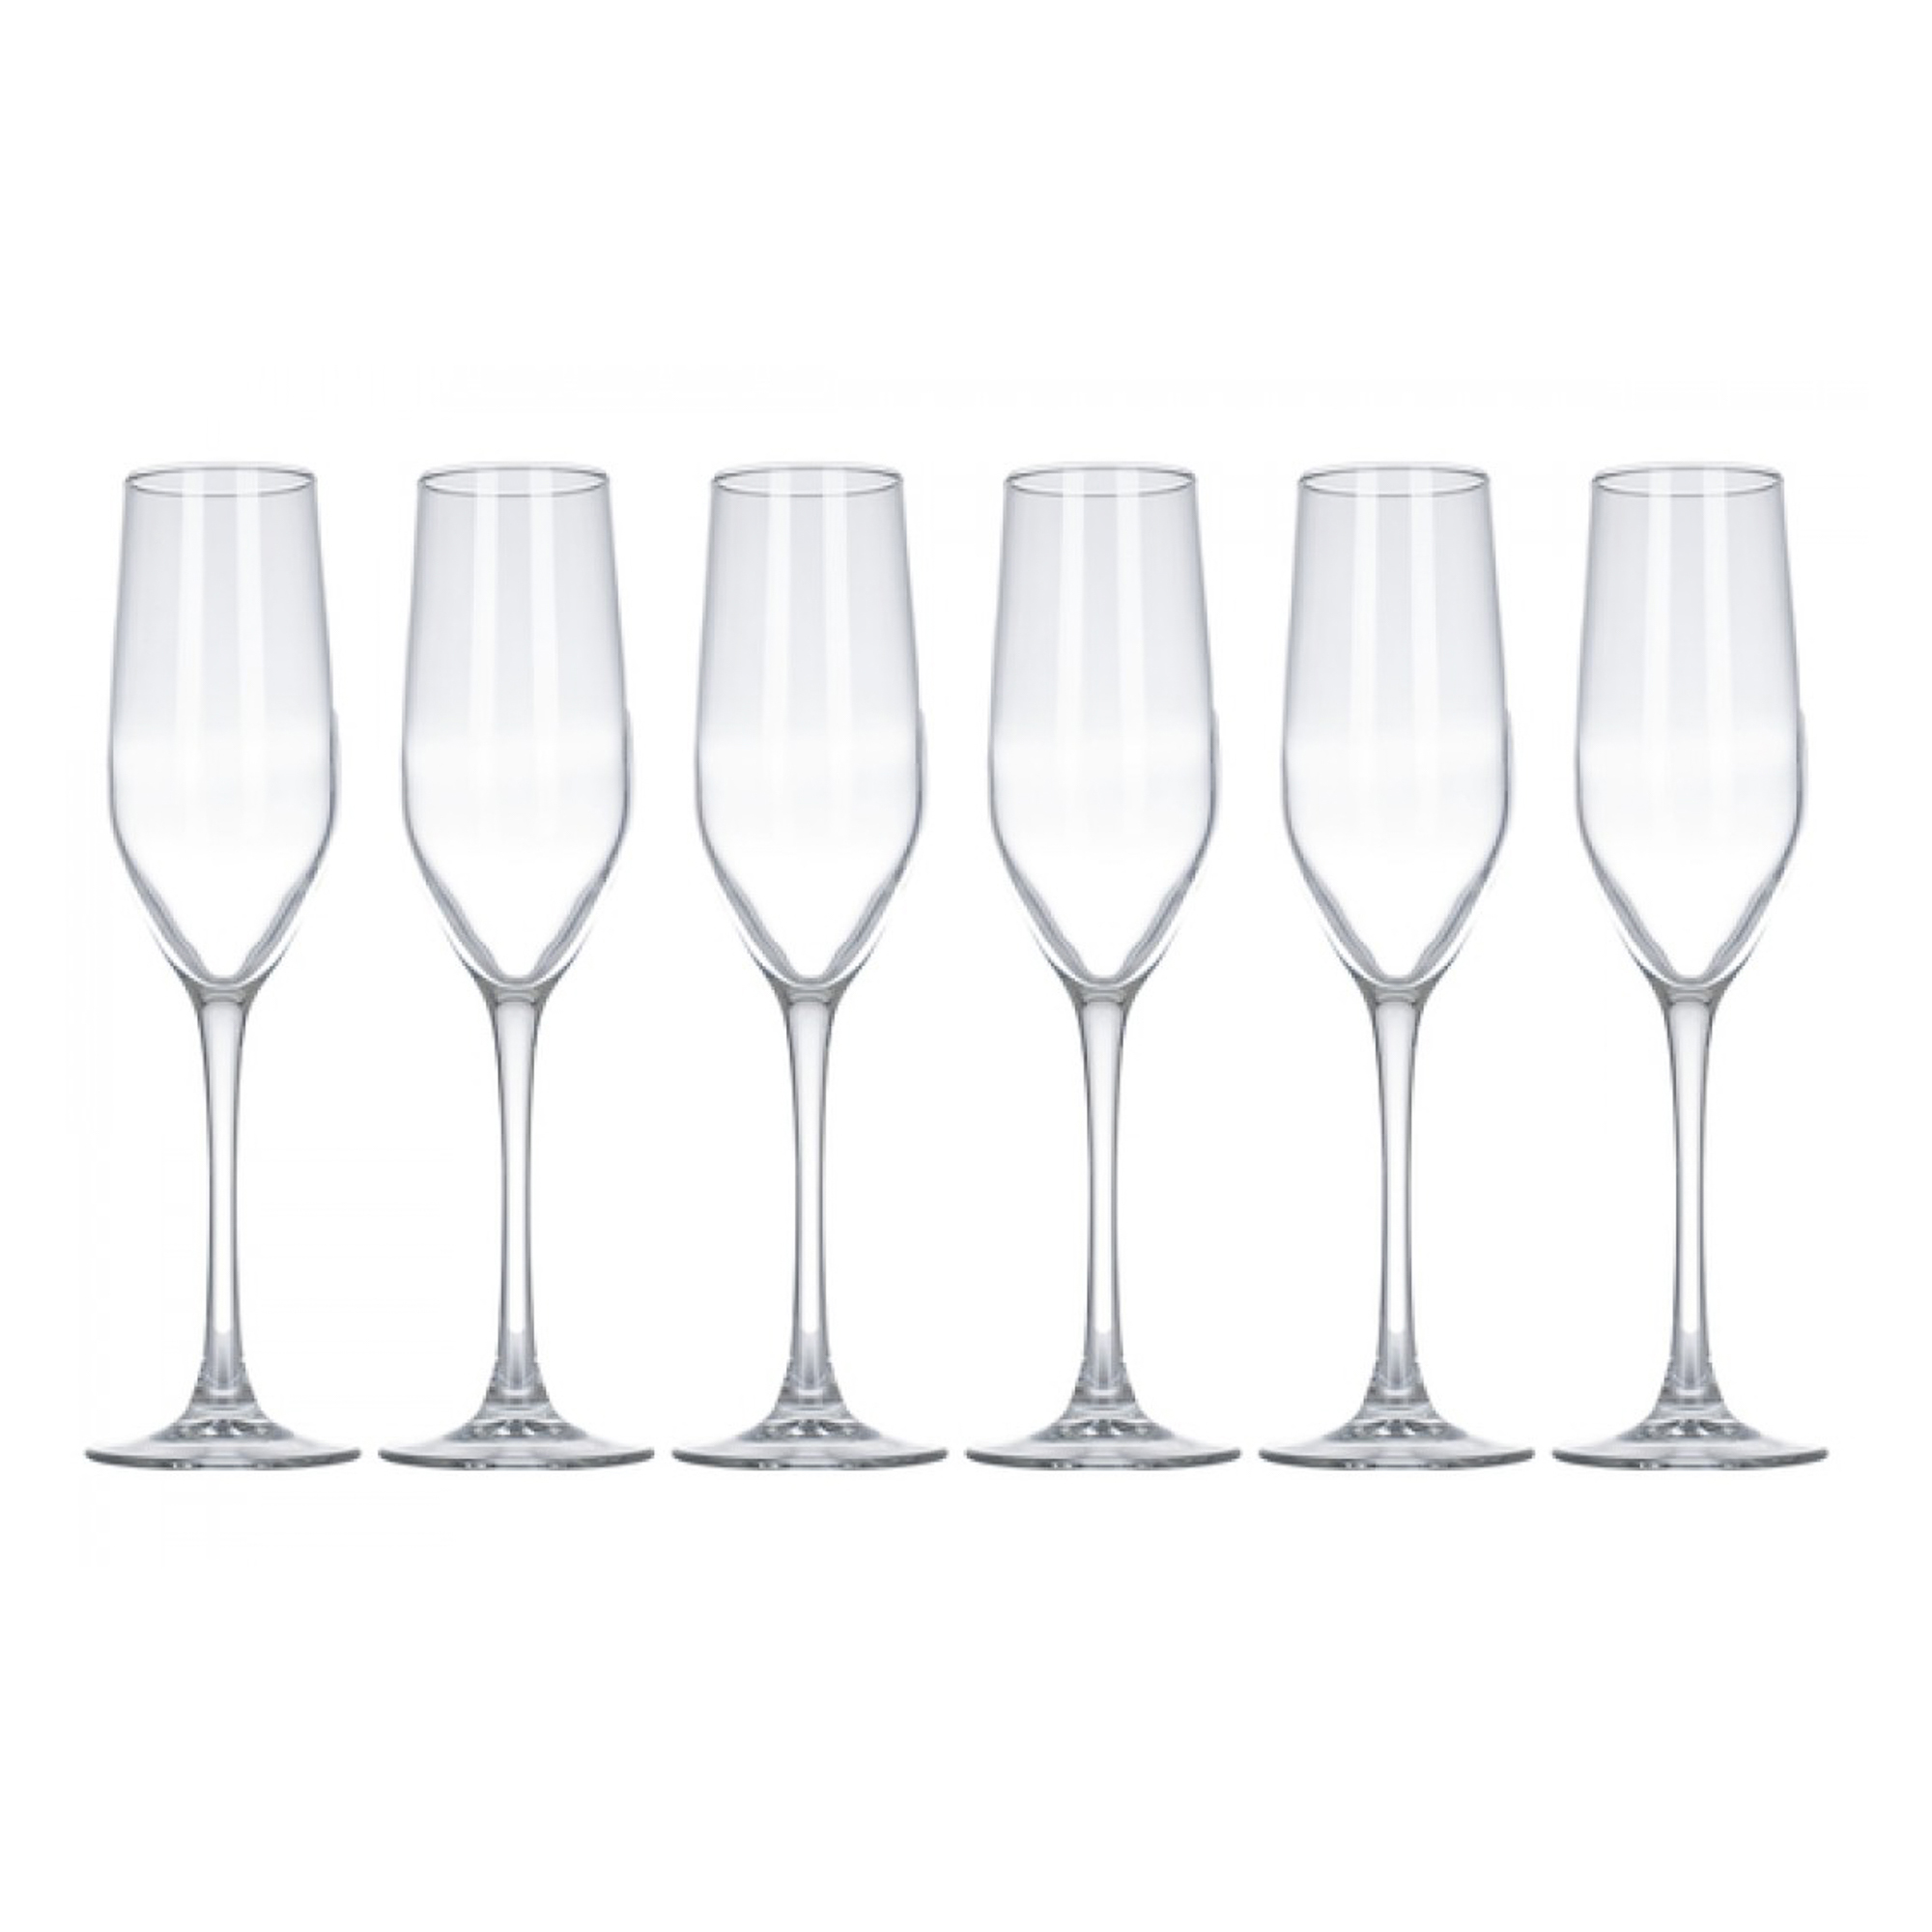 Набор бокалов для шампанского Luminarc селест 160мл 6шт набор бокалов luminarc селест 6шт 160мл шампань стекло